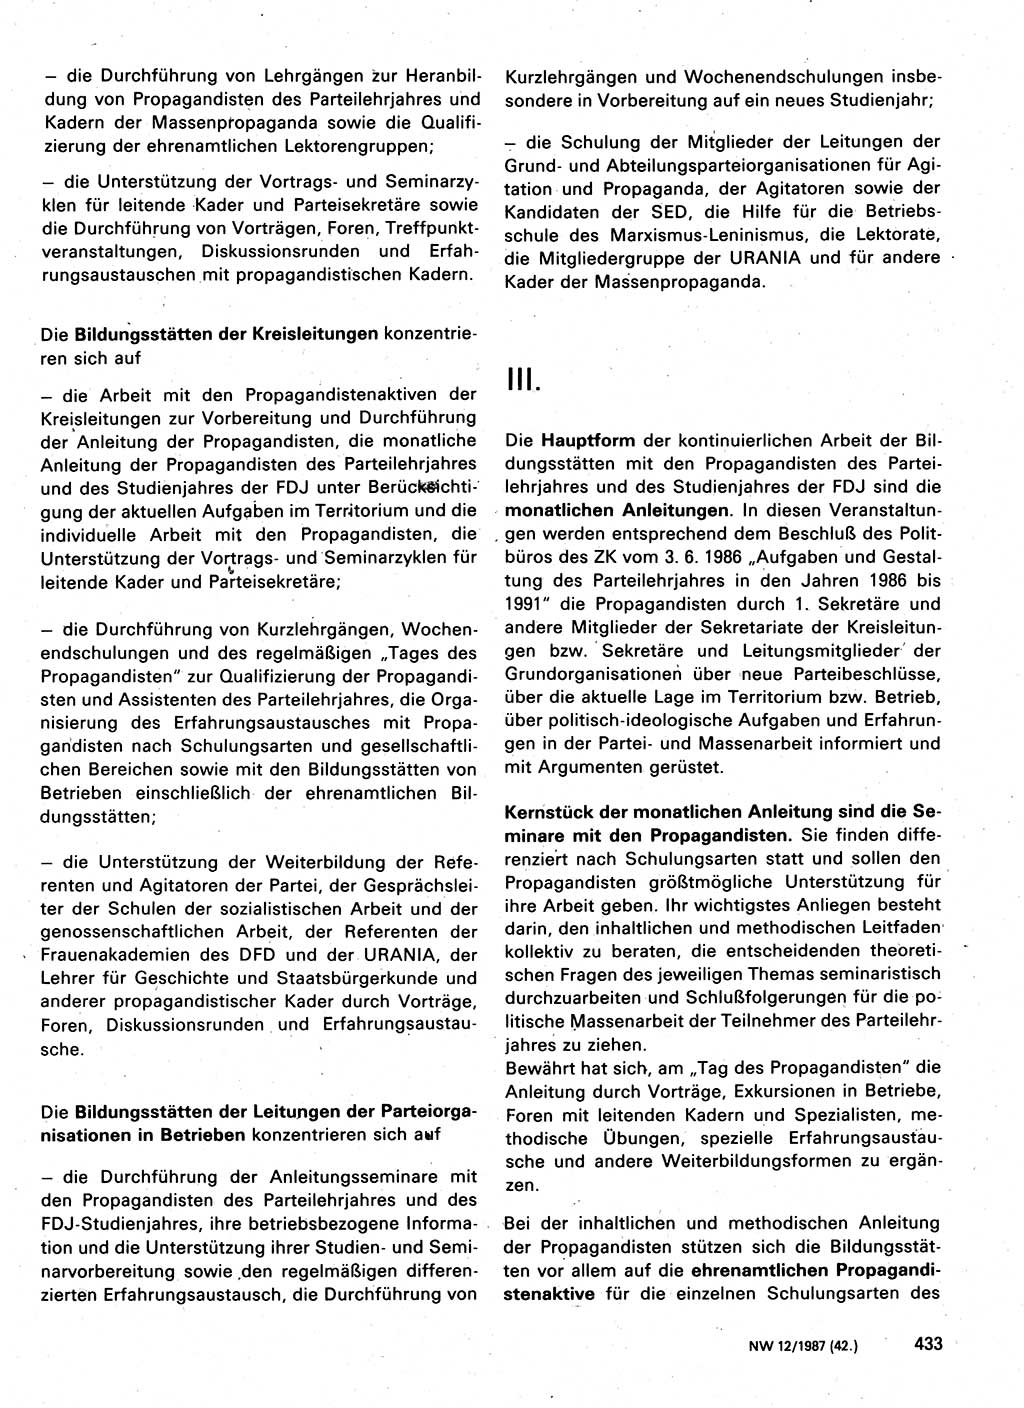 Neuer Weg (NW), Organ des Zentralkomitees (ZK) der SED (Sozialistische Einheitspartei Deutschlands) für Fragen des Parteilebens, 42. Jahrgang [Deutsche Demokratische Republik (DDR)] 1987, Seite 432 (NW ZK SED DDR 1987, S. 432)